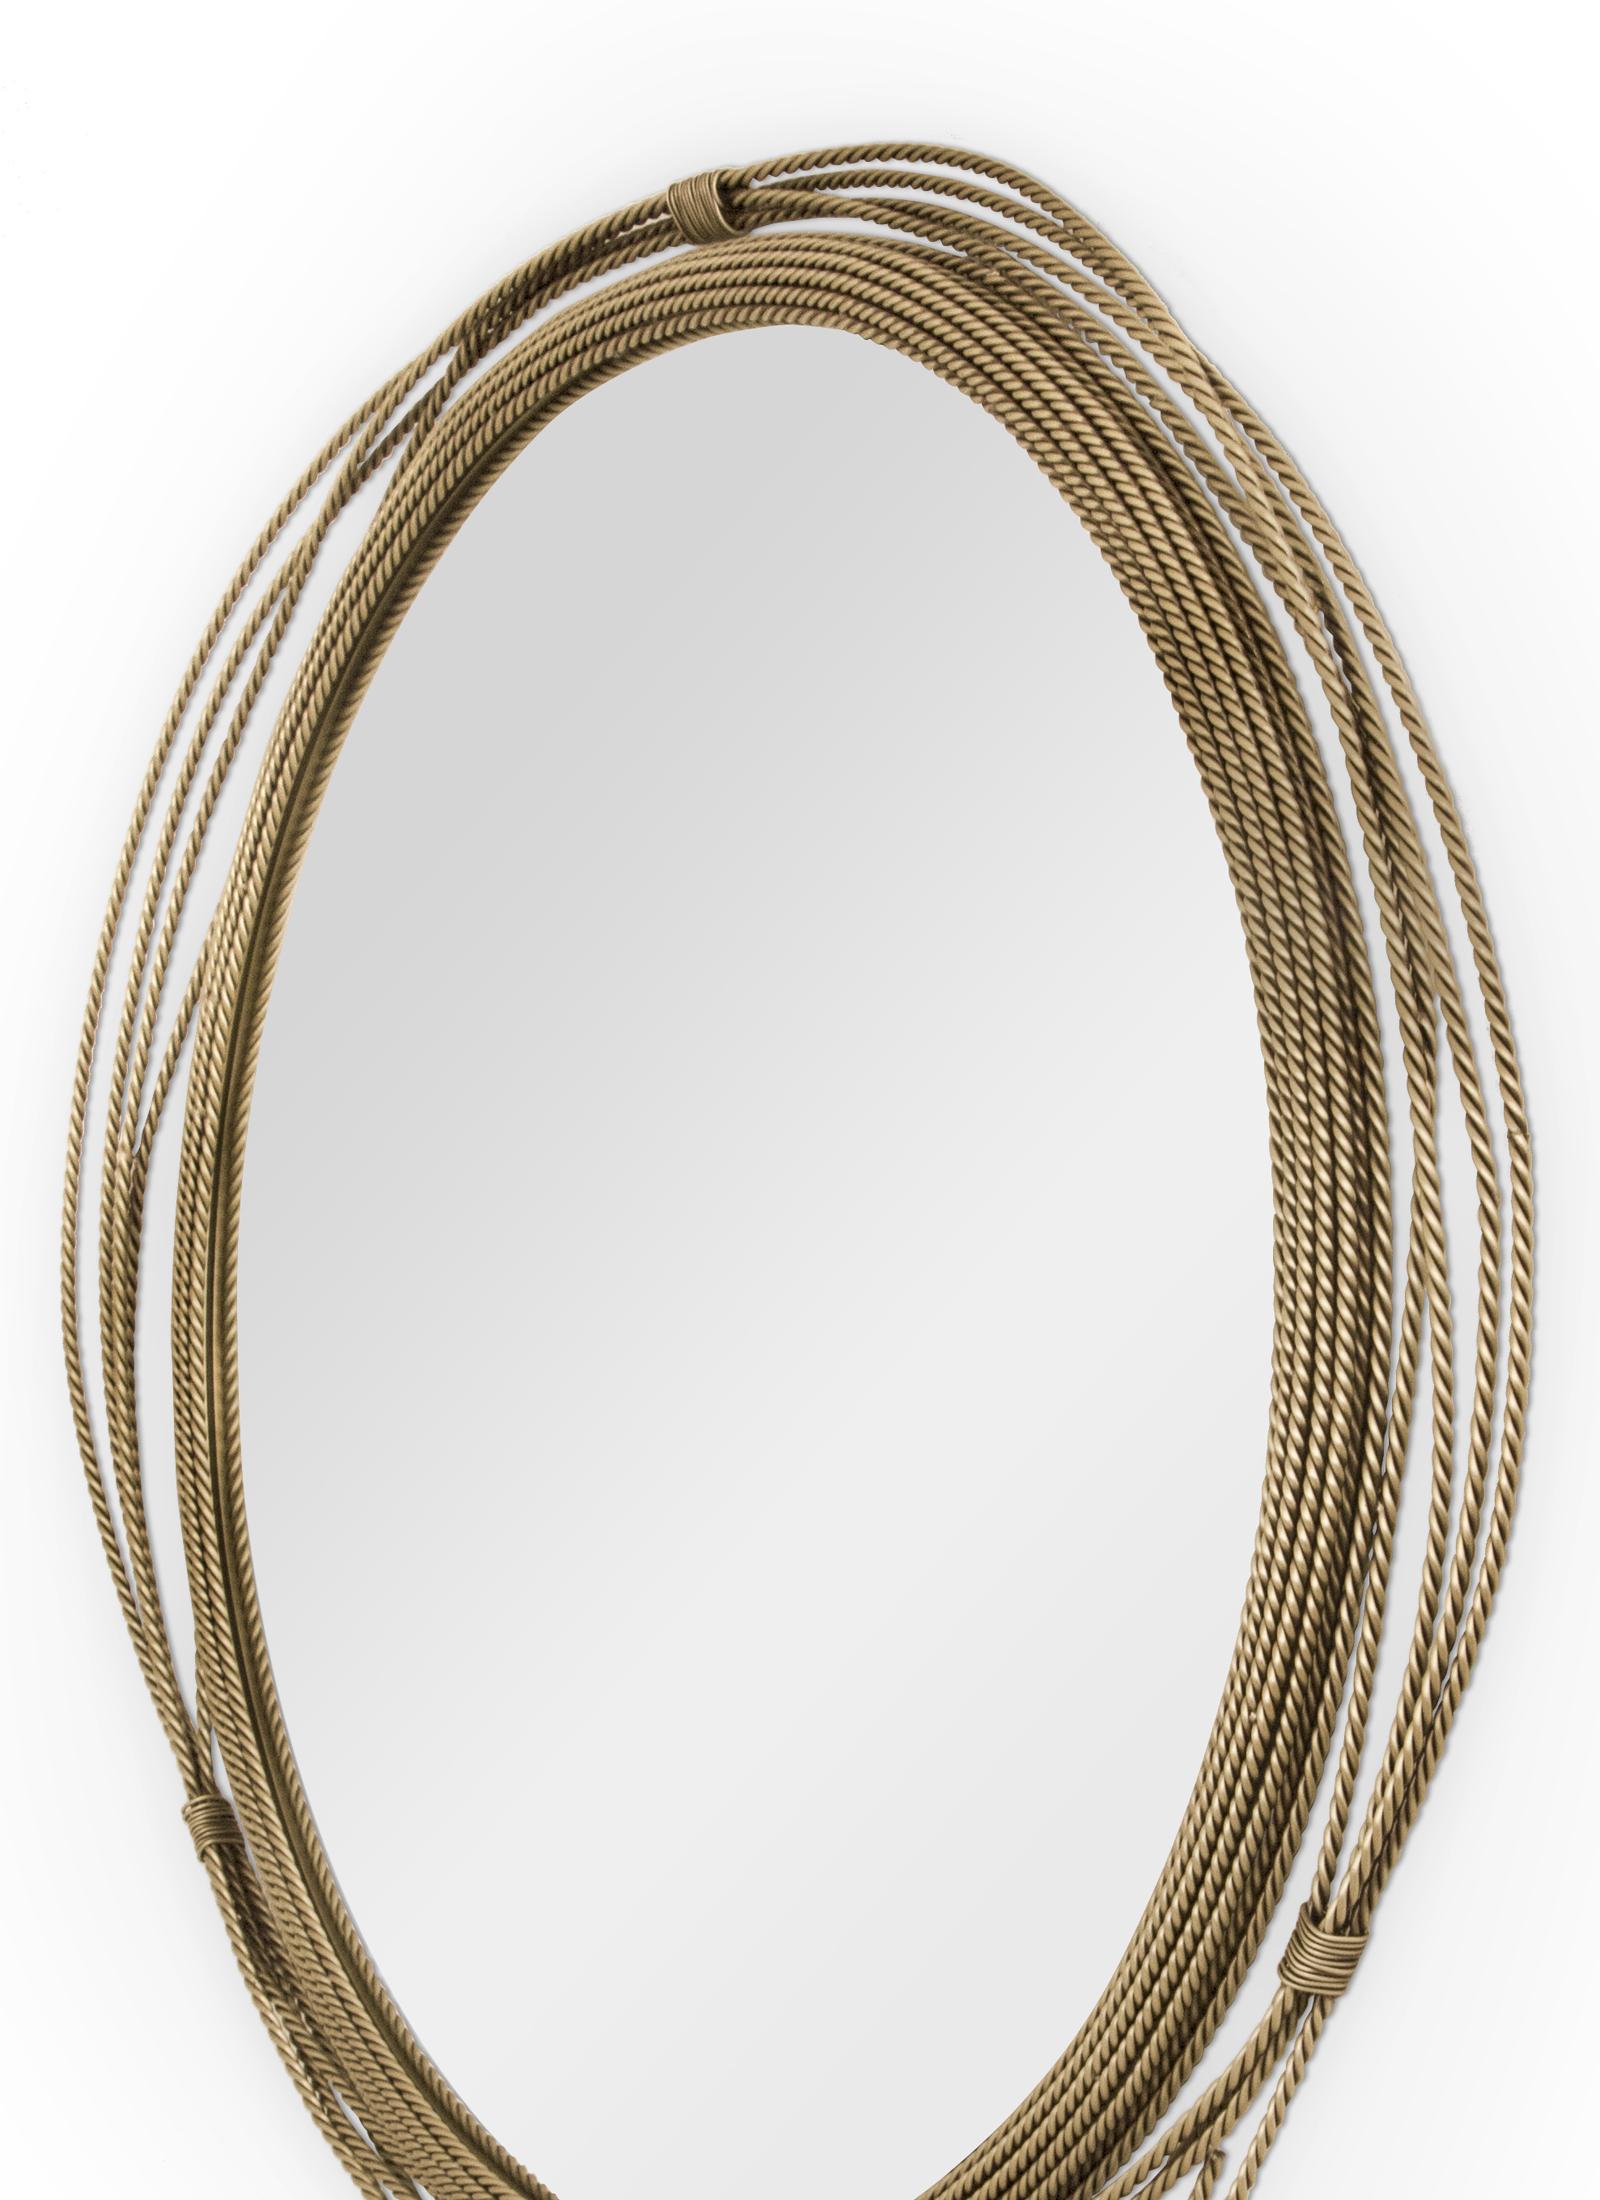 round brass mirror